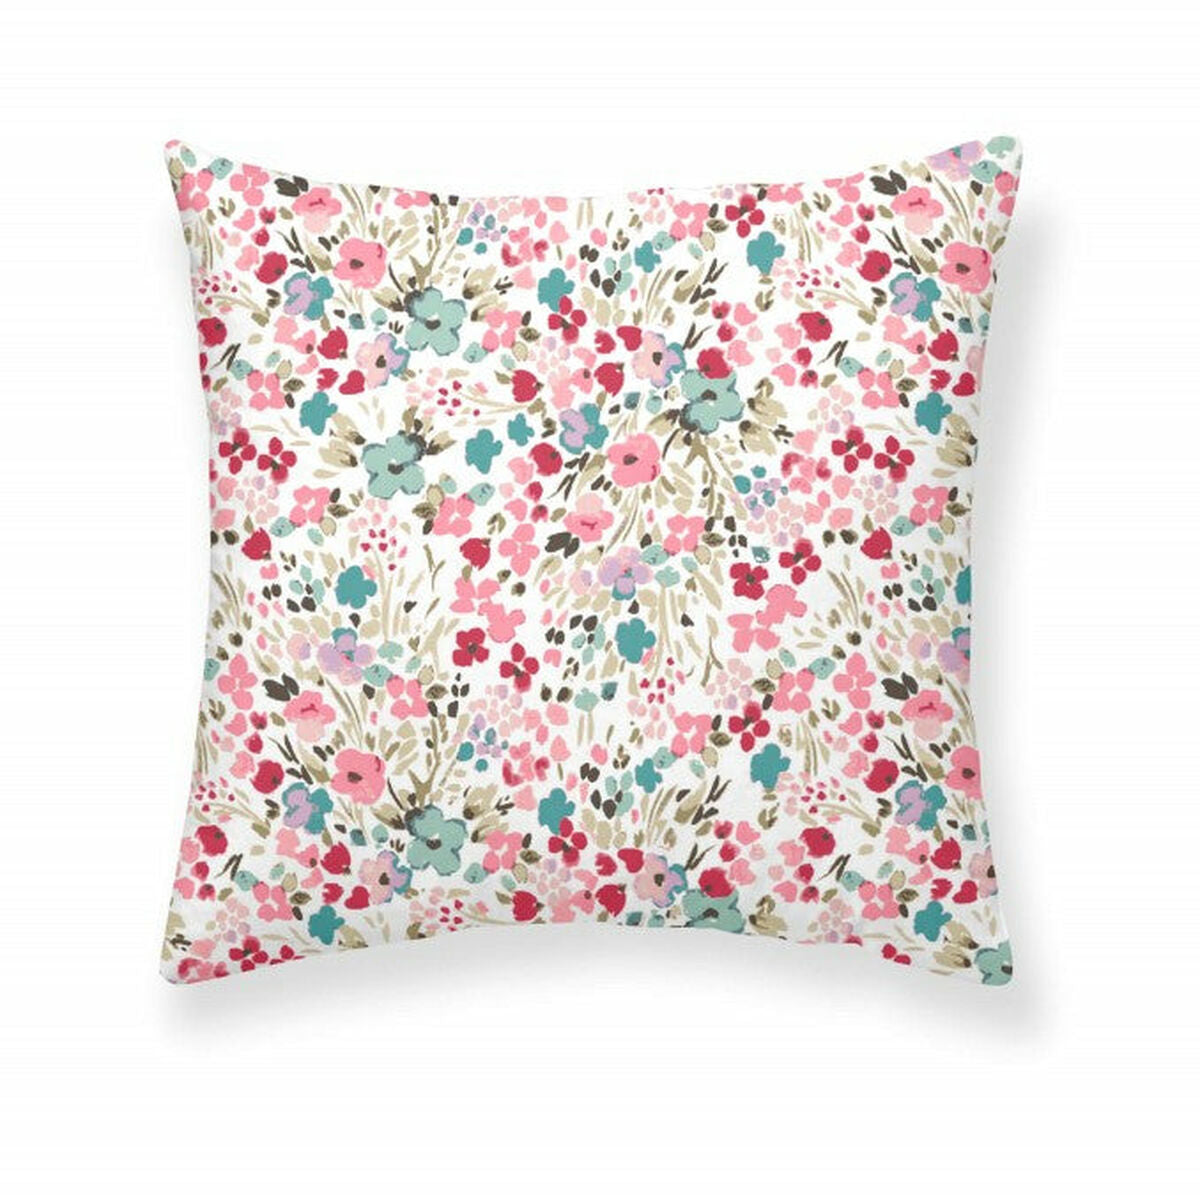 Pillowcase Decolores Loni Multicolour 65 x 65 cm